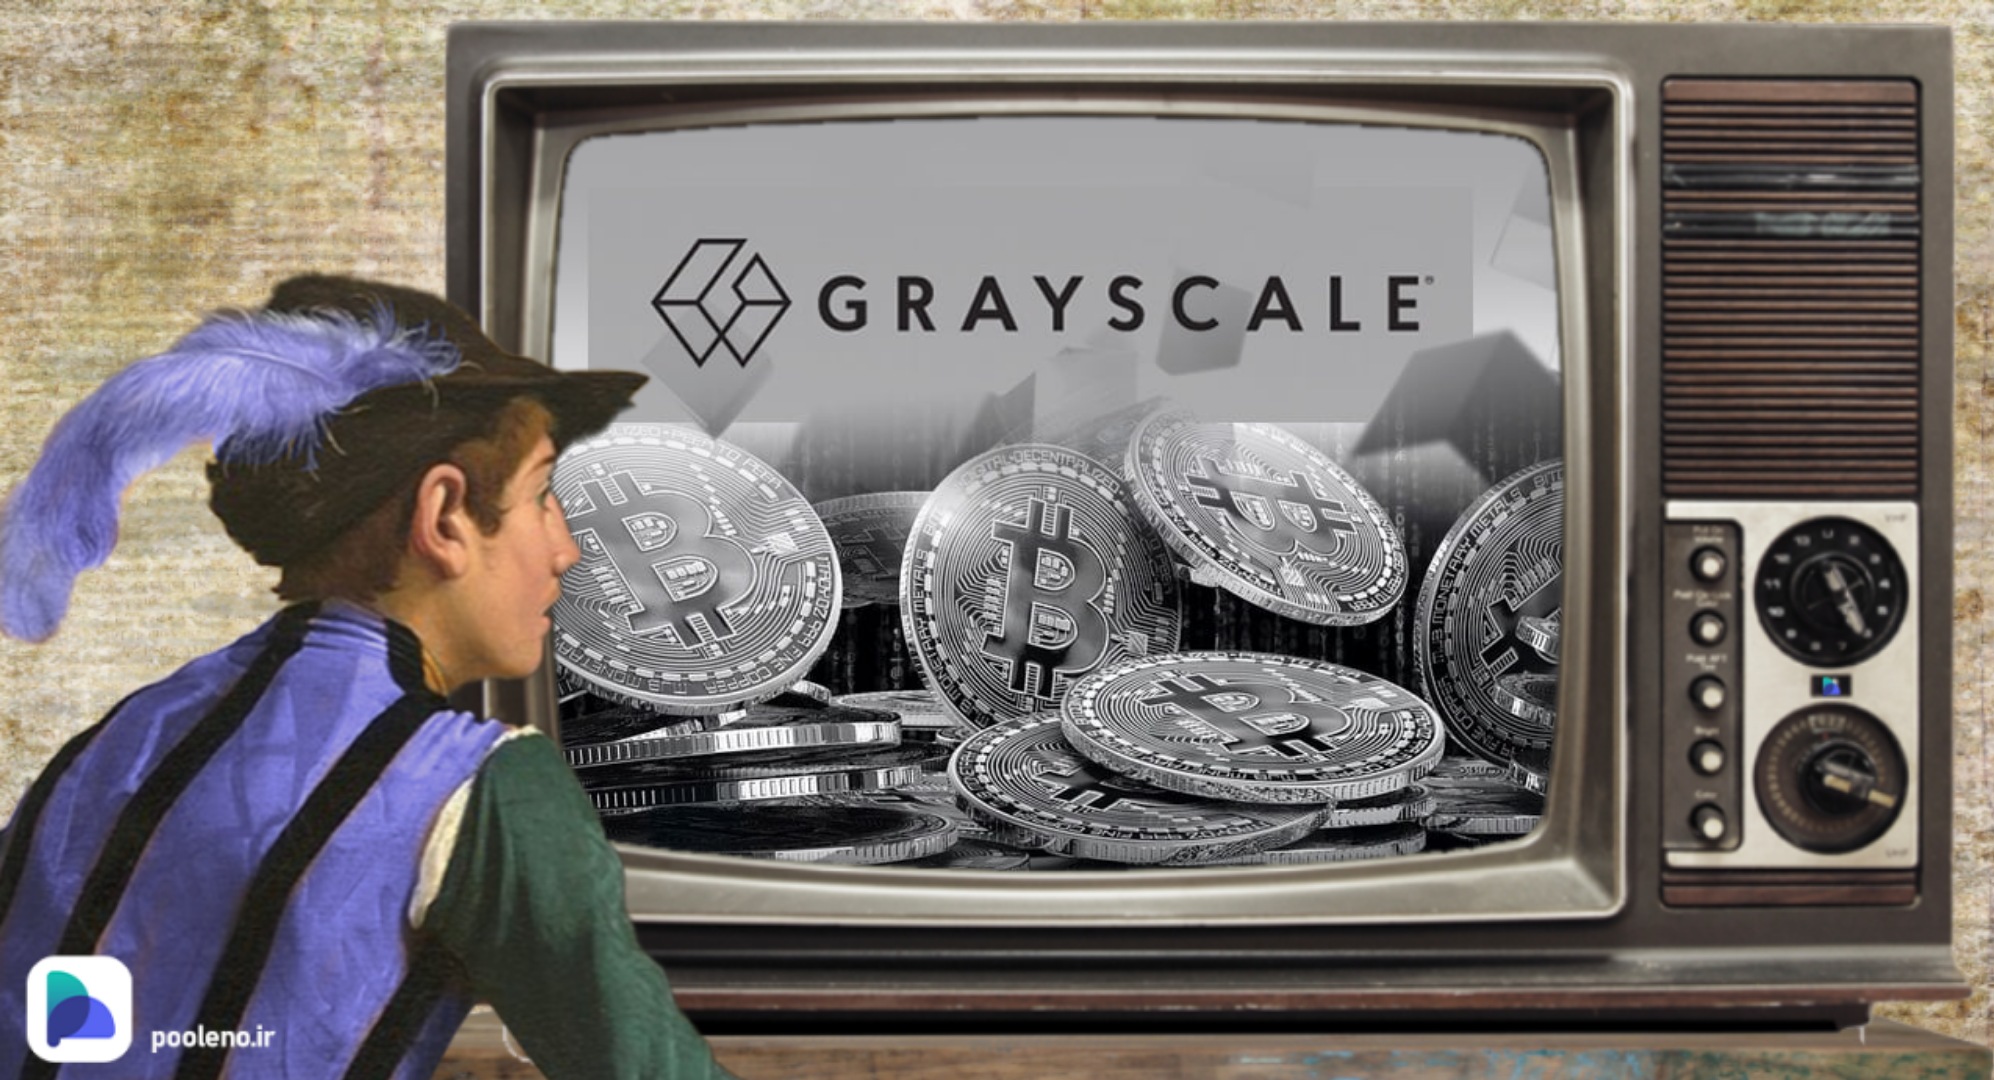 هشدار در مورد فروپاشی Grayscale و فروش گسترده بیت کوین!